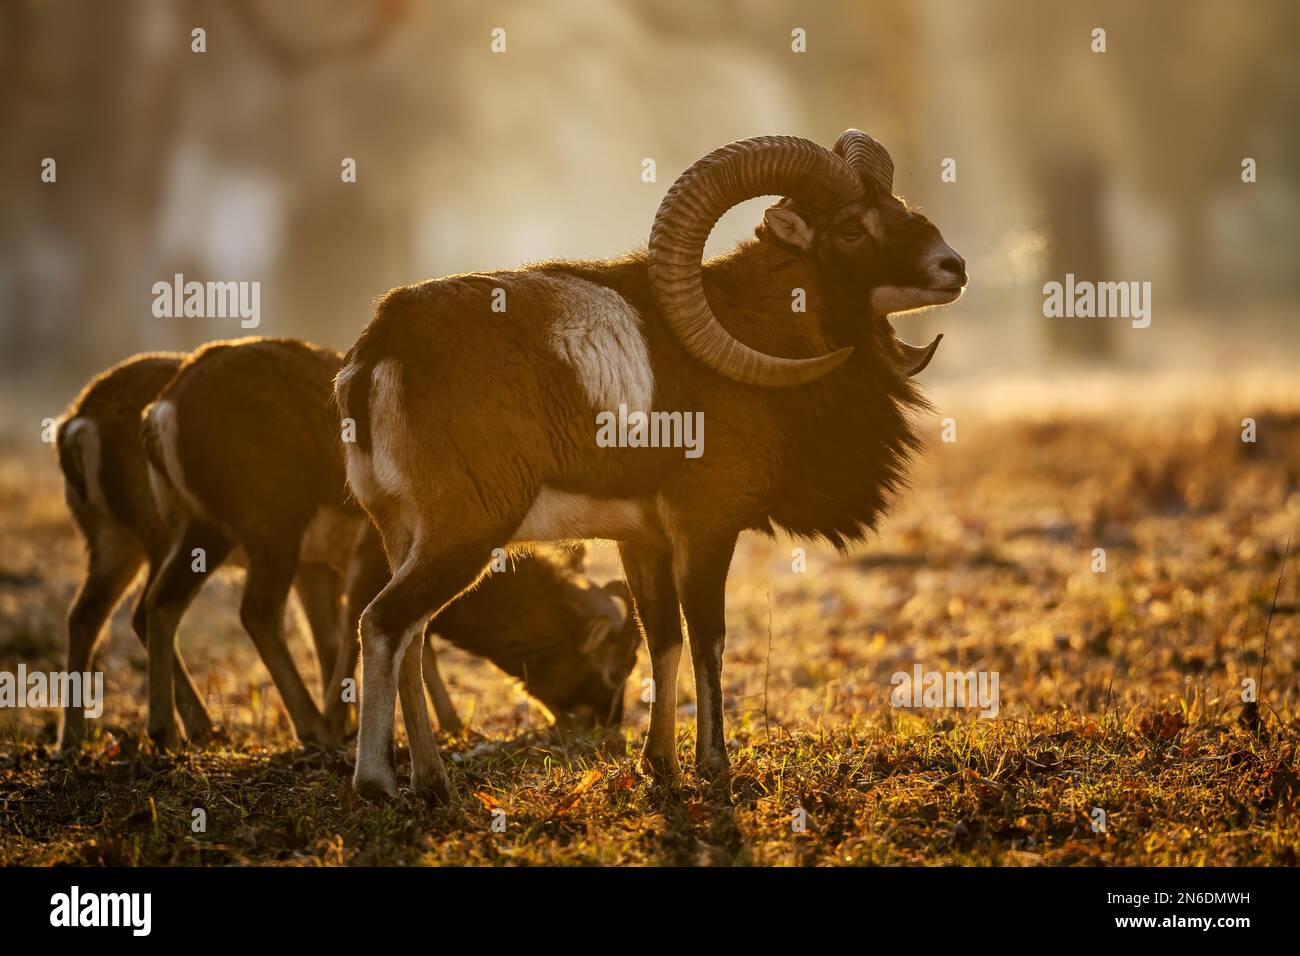 Europäisches Mouflon - Ovis orientalis musimon, wunderschöne primitive Schafe mit langen Hörnern aus europäischen Wäldern und Wäldern, Tschechische Republik. Stockfoto